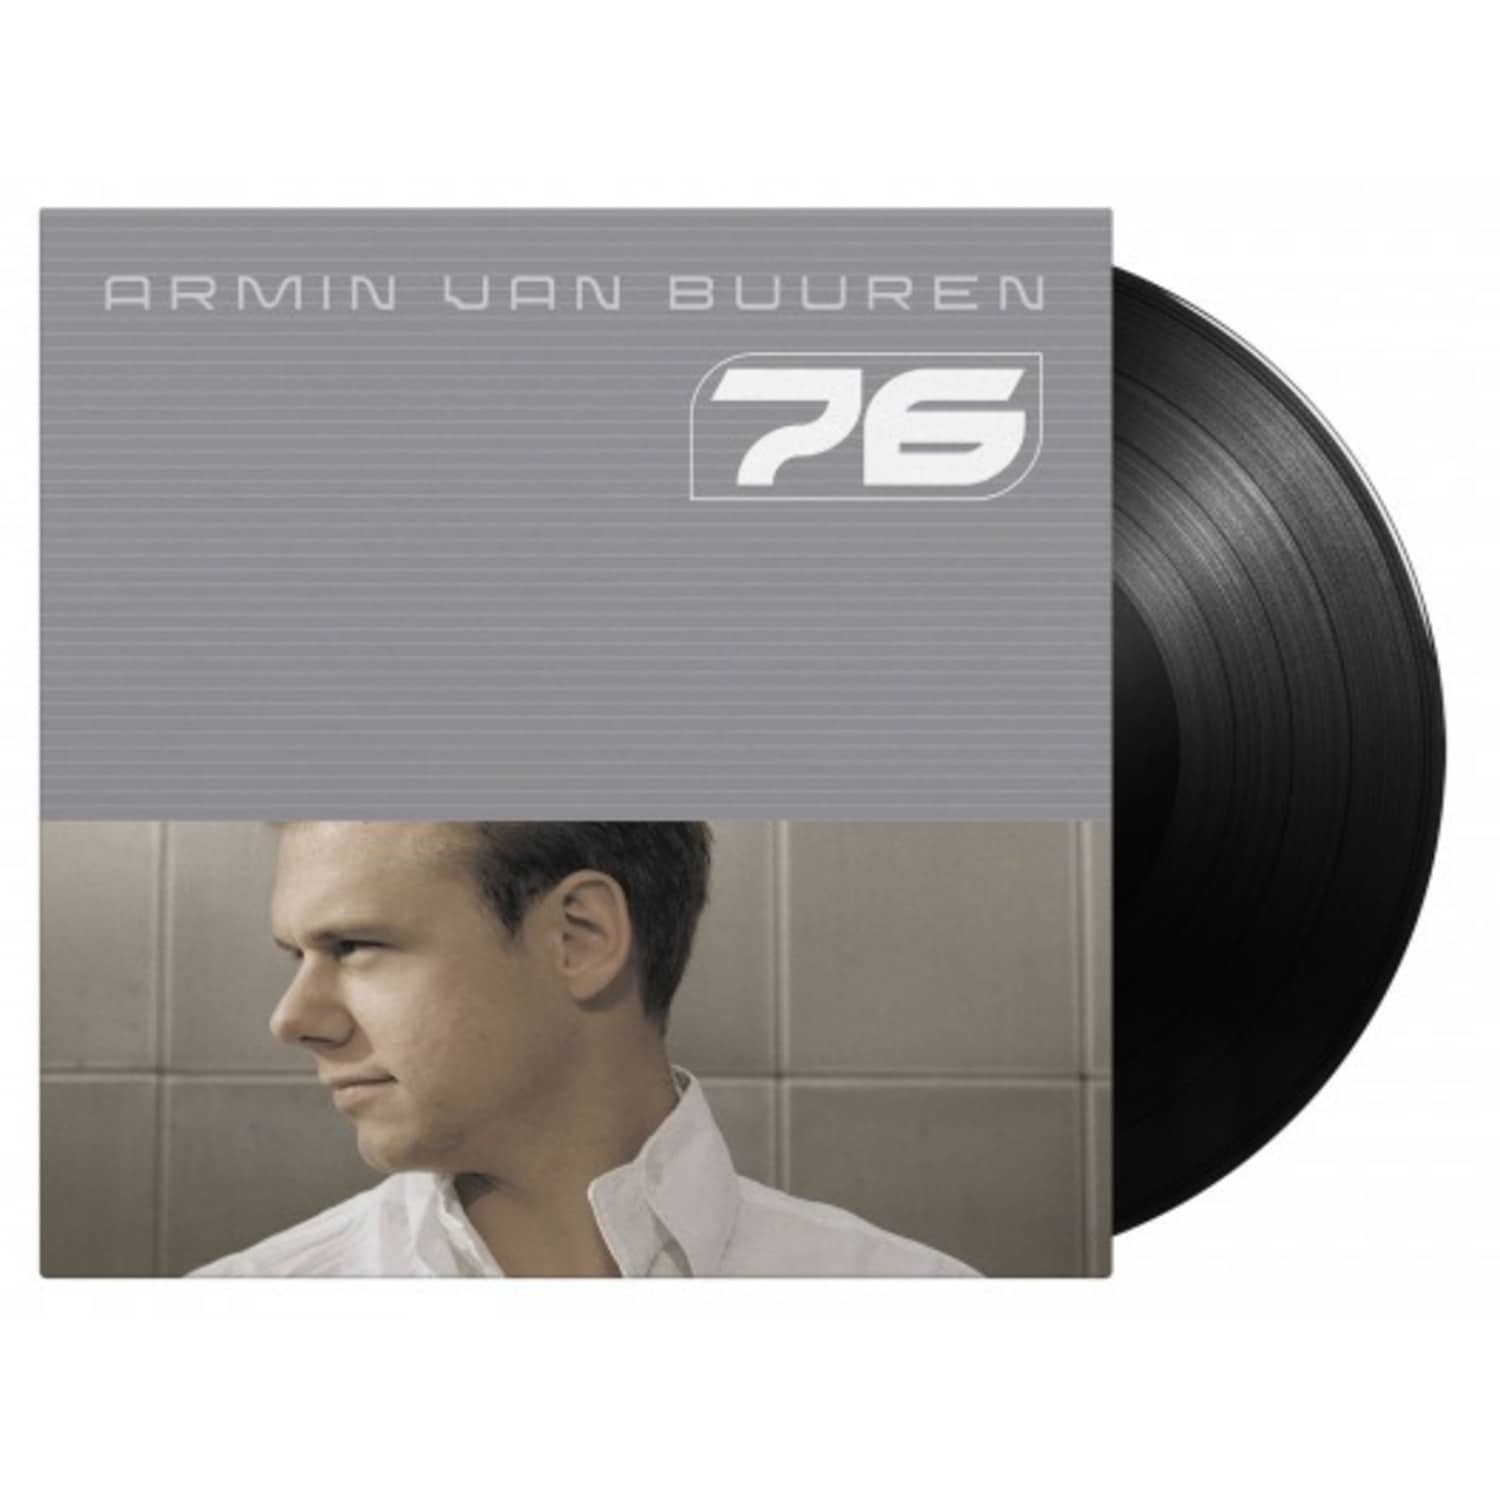 Armin van Buuren - 76 